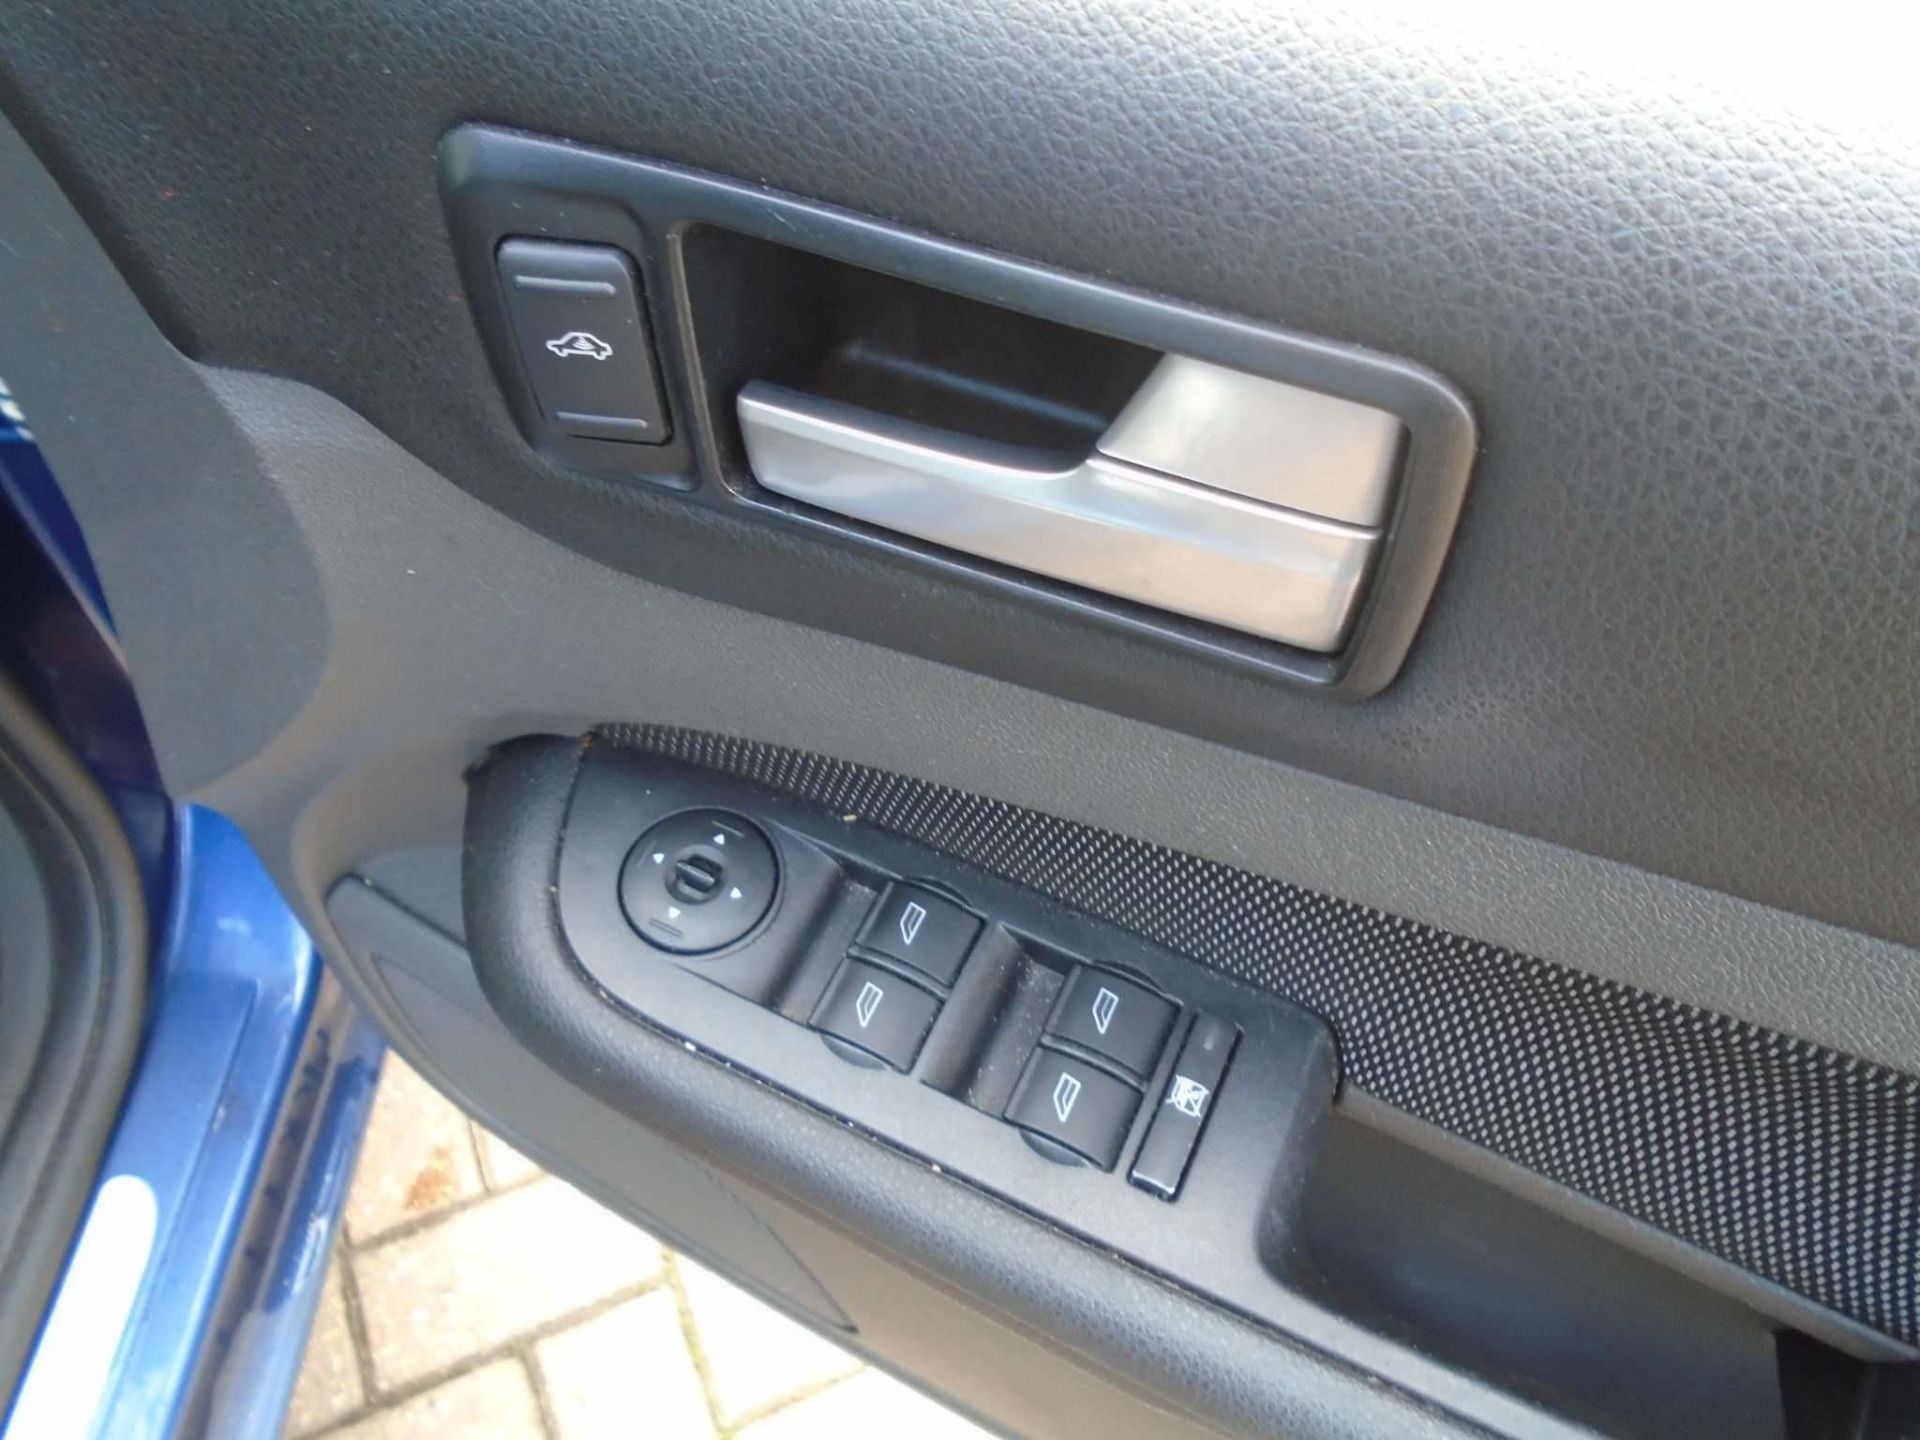 2007 Ford Focus 1.8 TDCI Titanium 5 Door Hatchback - Image 3 of 17